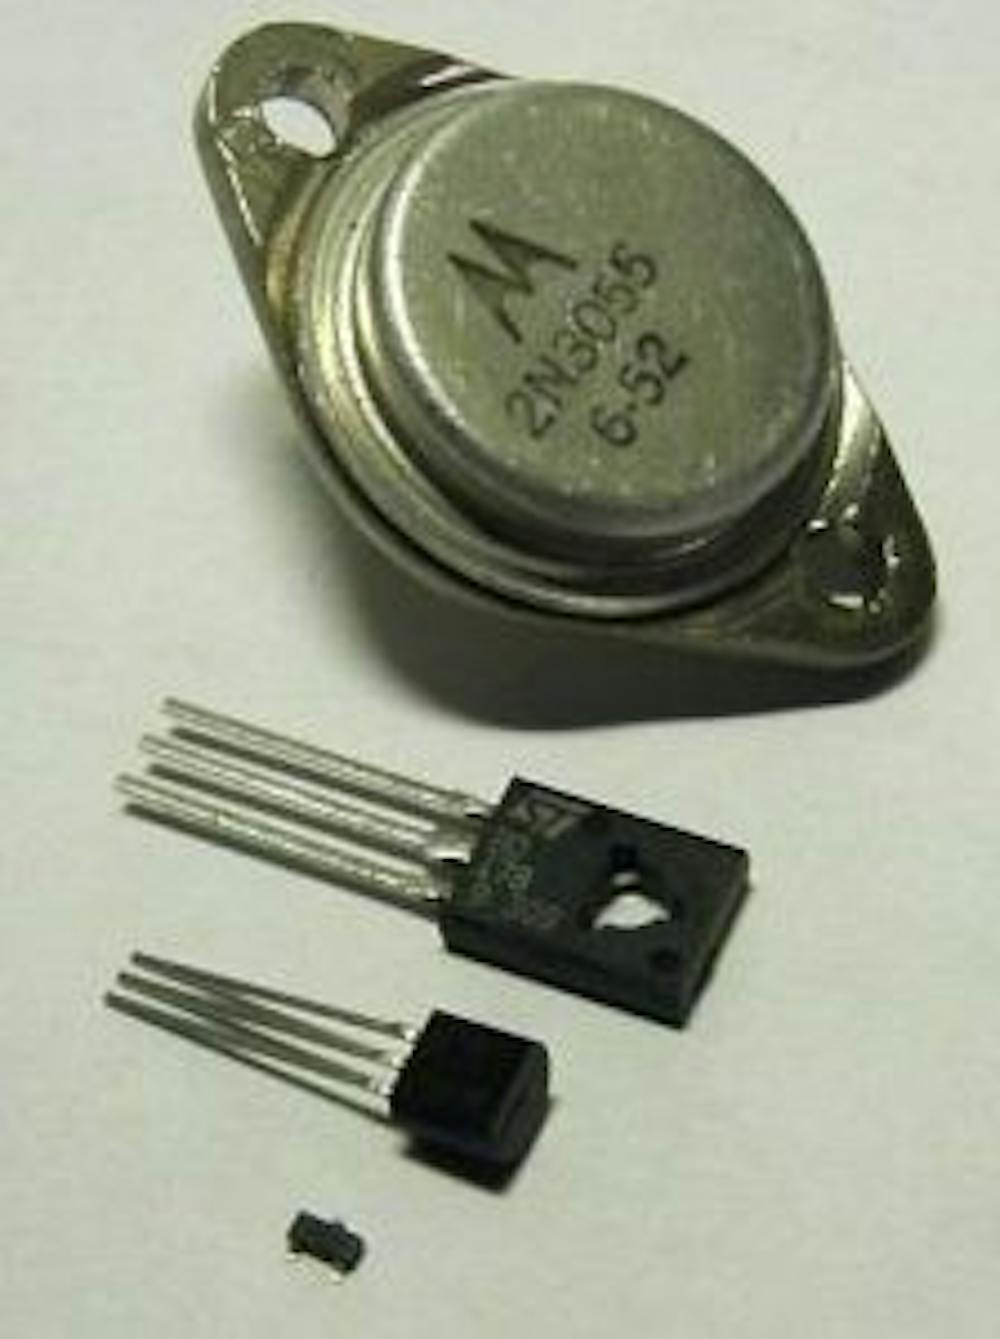  Transisto/CC BY-SA 3.0
Transistors come in different sizes.